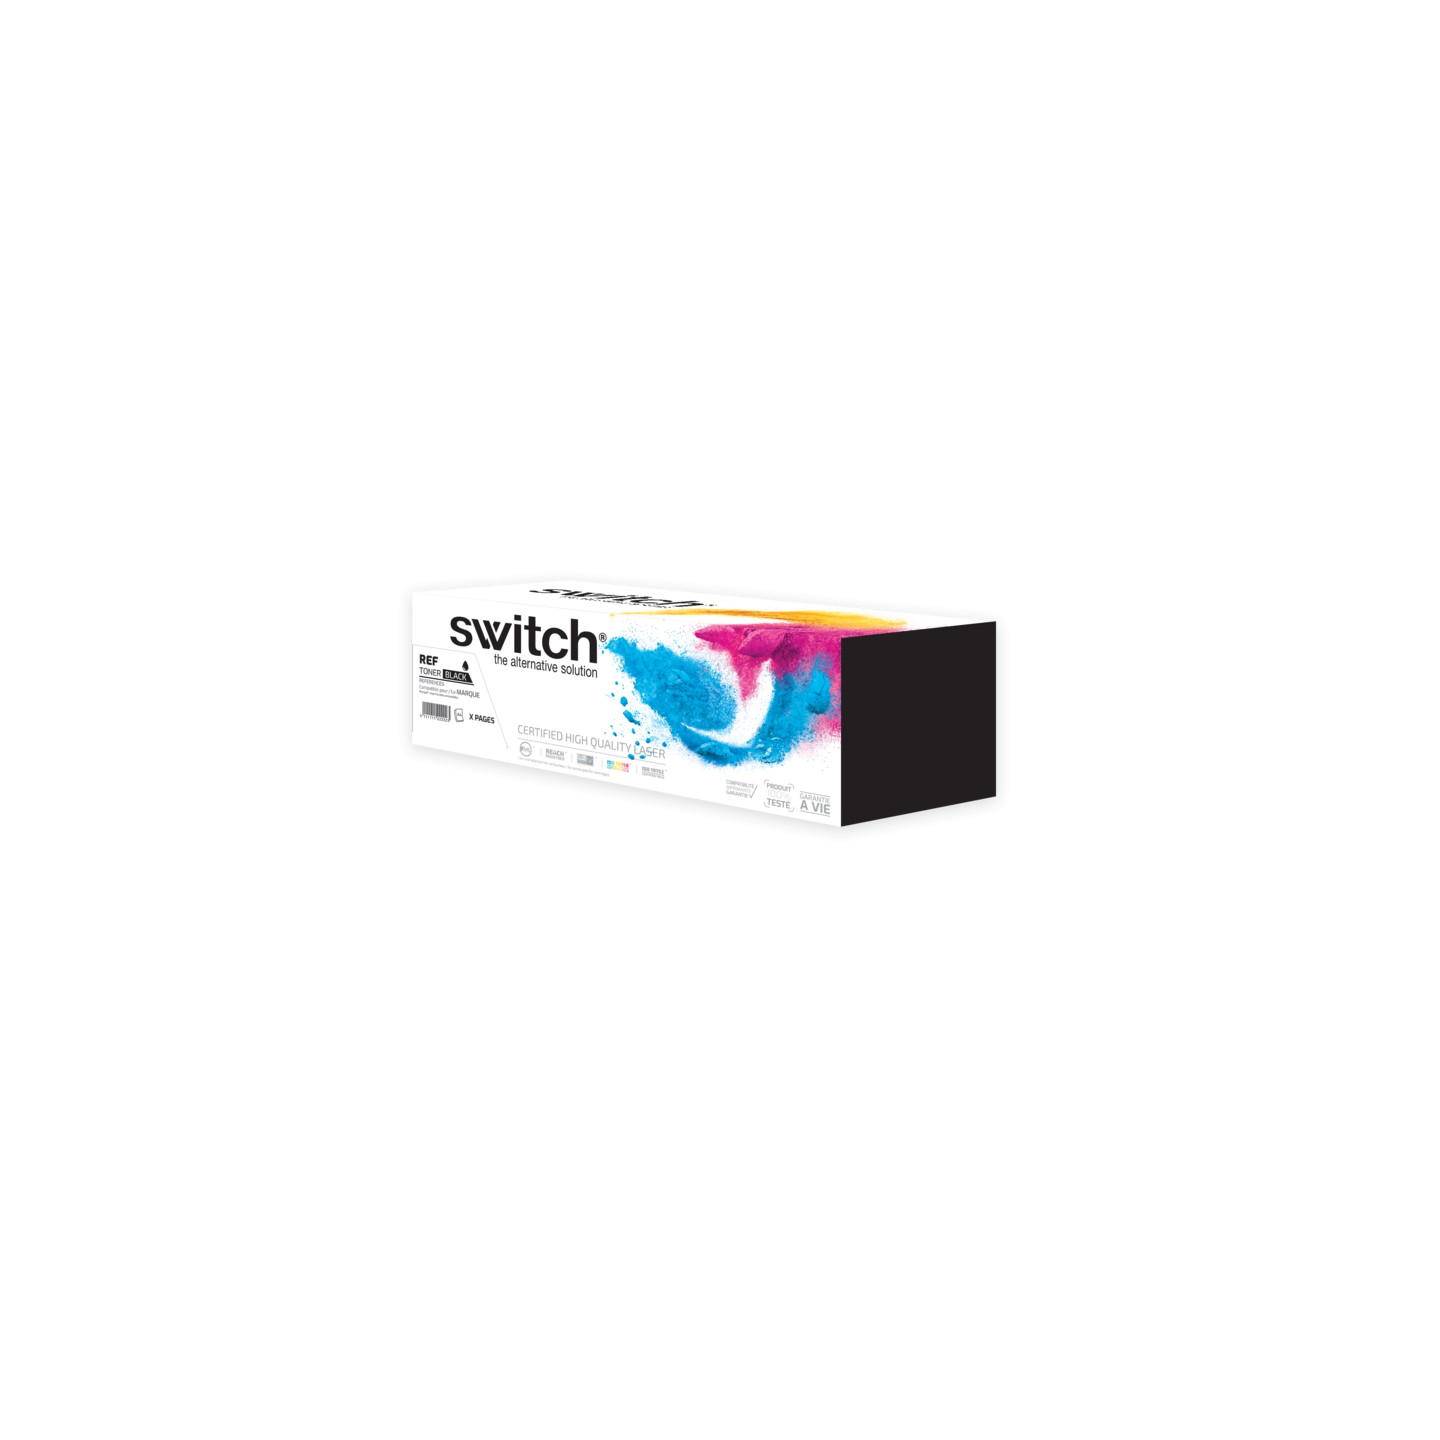 SWITCH Toner compatible avec ML-1710D3, SCX 4216D3, SCX 4100D3 - 109R00725, 18S0090 - Noir